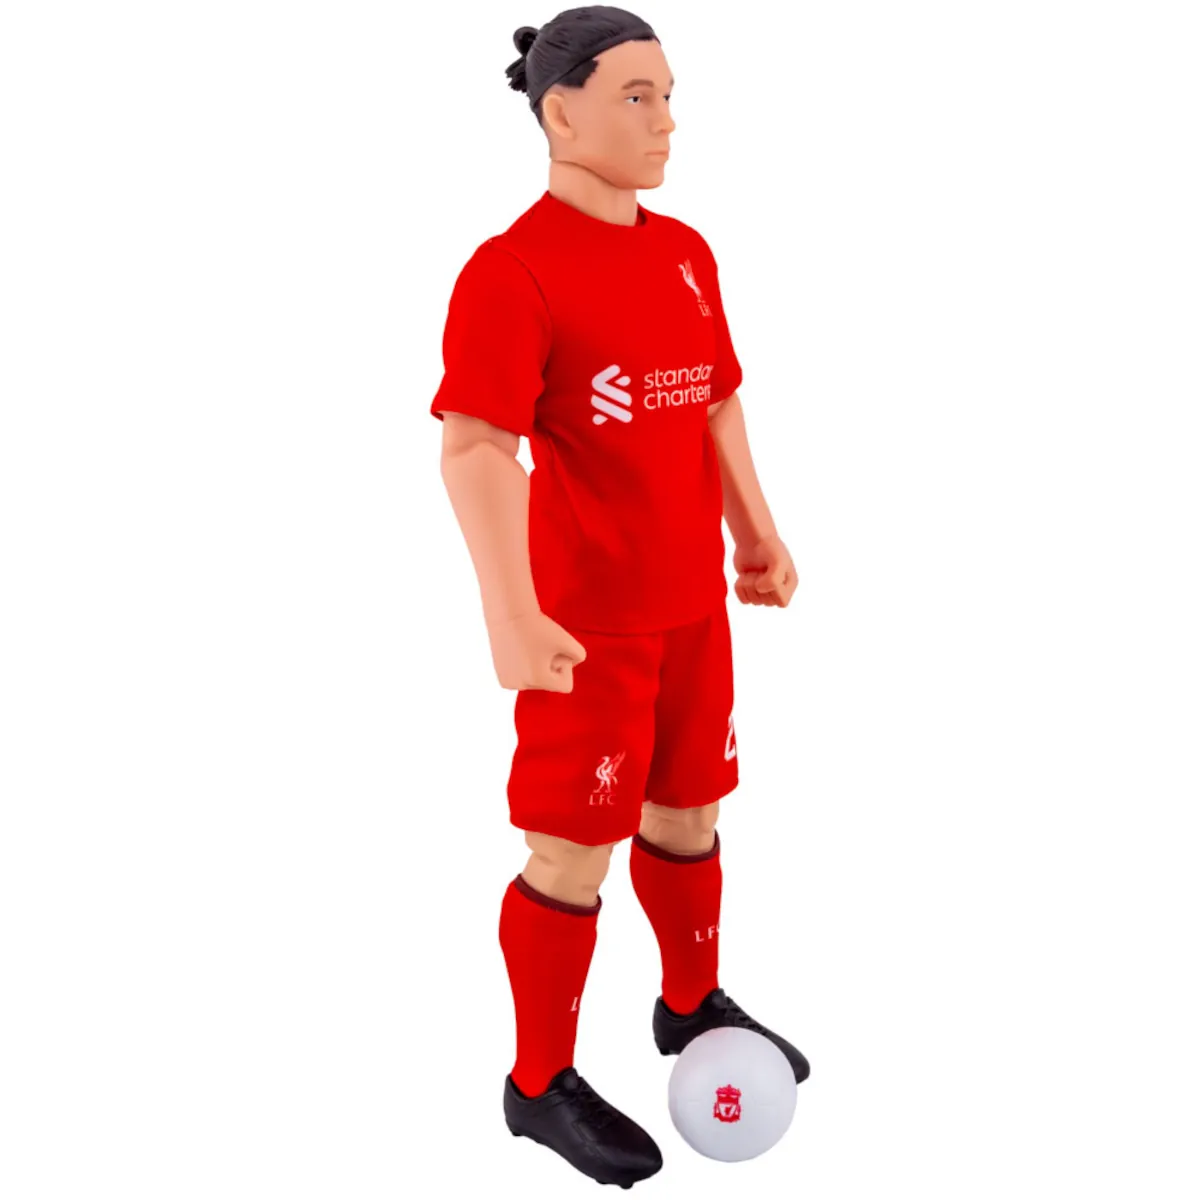 TM-03854 Liverpool FC Darwin Núñez 30cm Action Figure 2